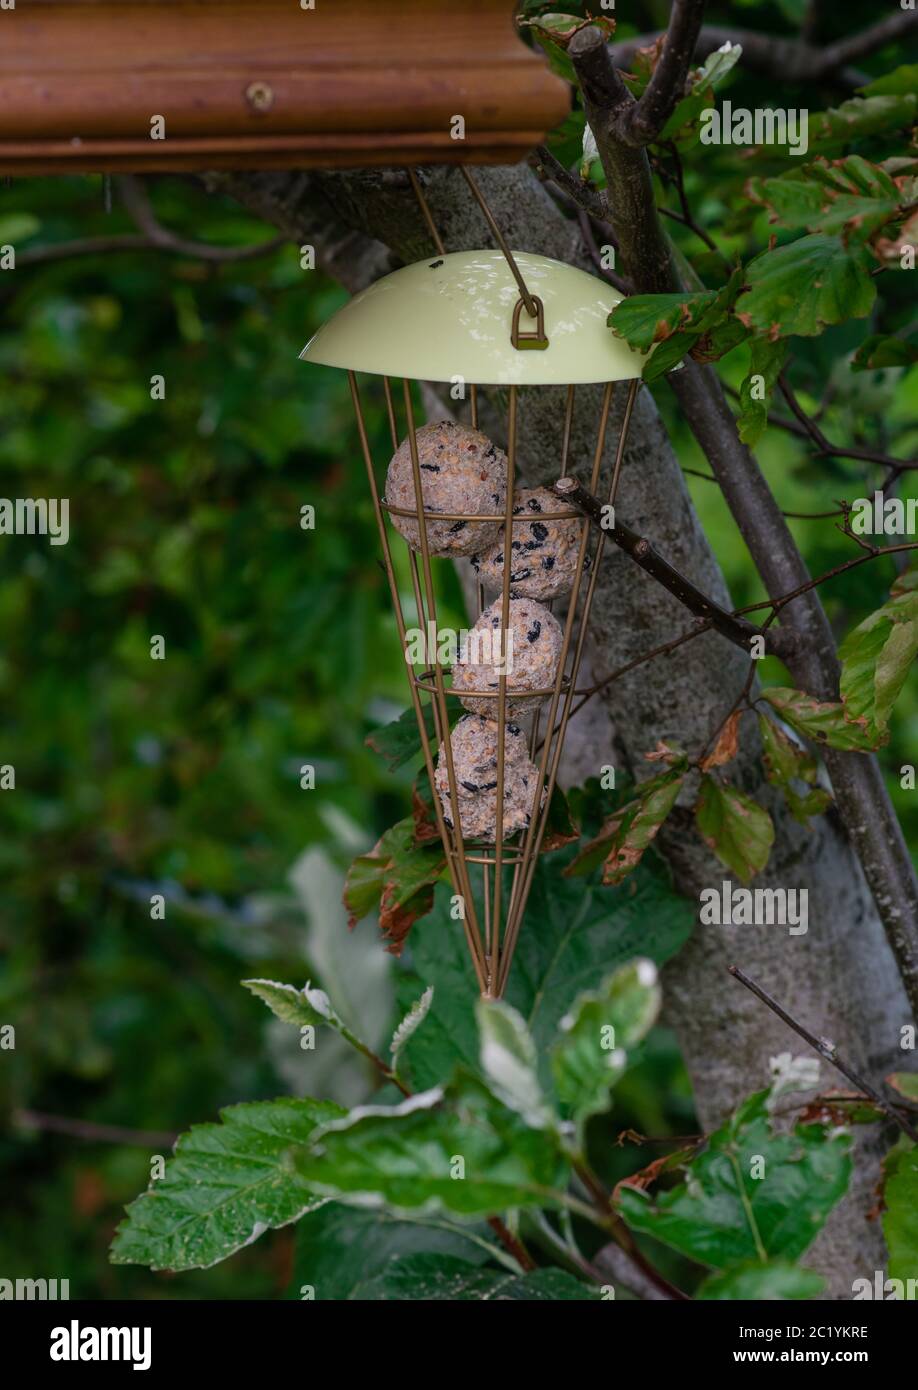 Mangeoire à oiseaux contenant des boules de graisse accrochées dans les arbres Banque D'Images